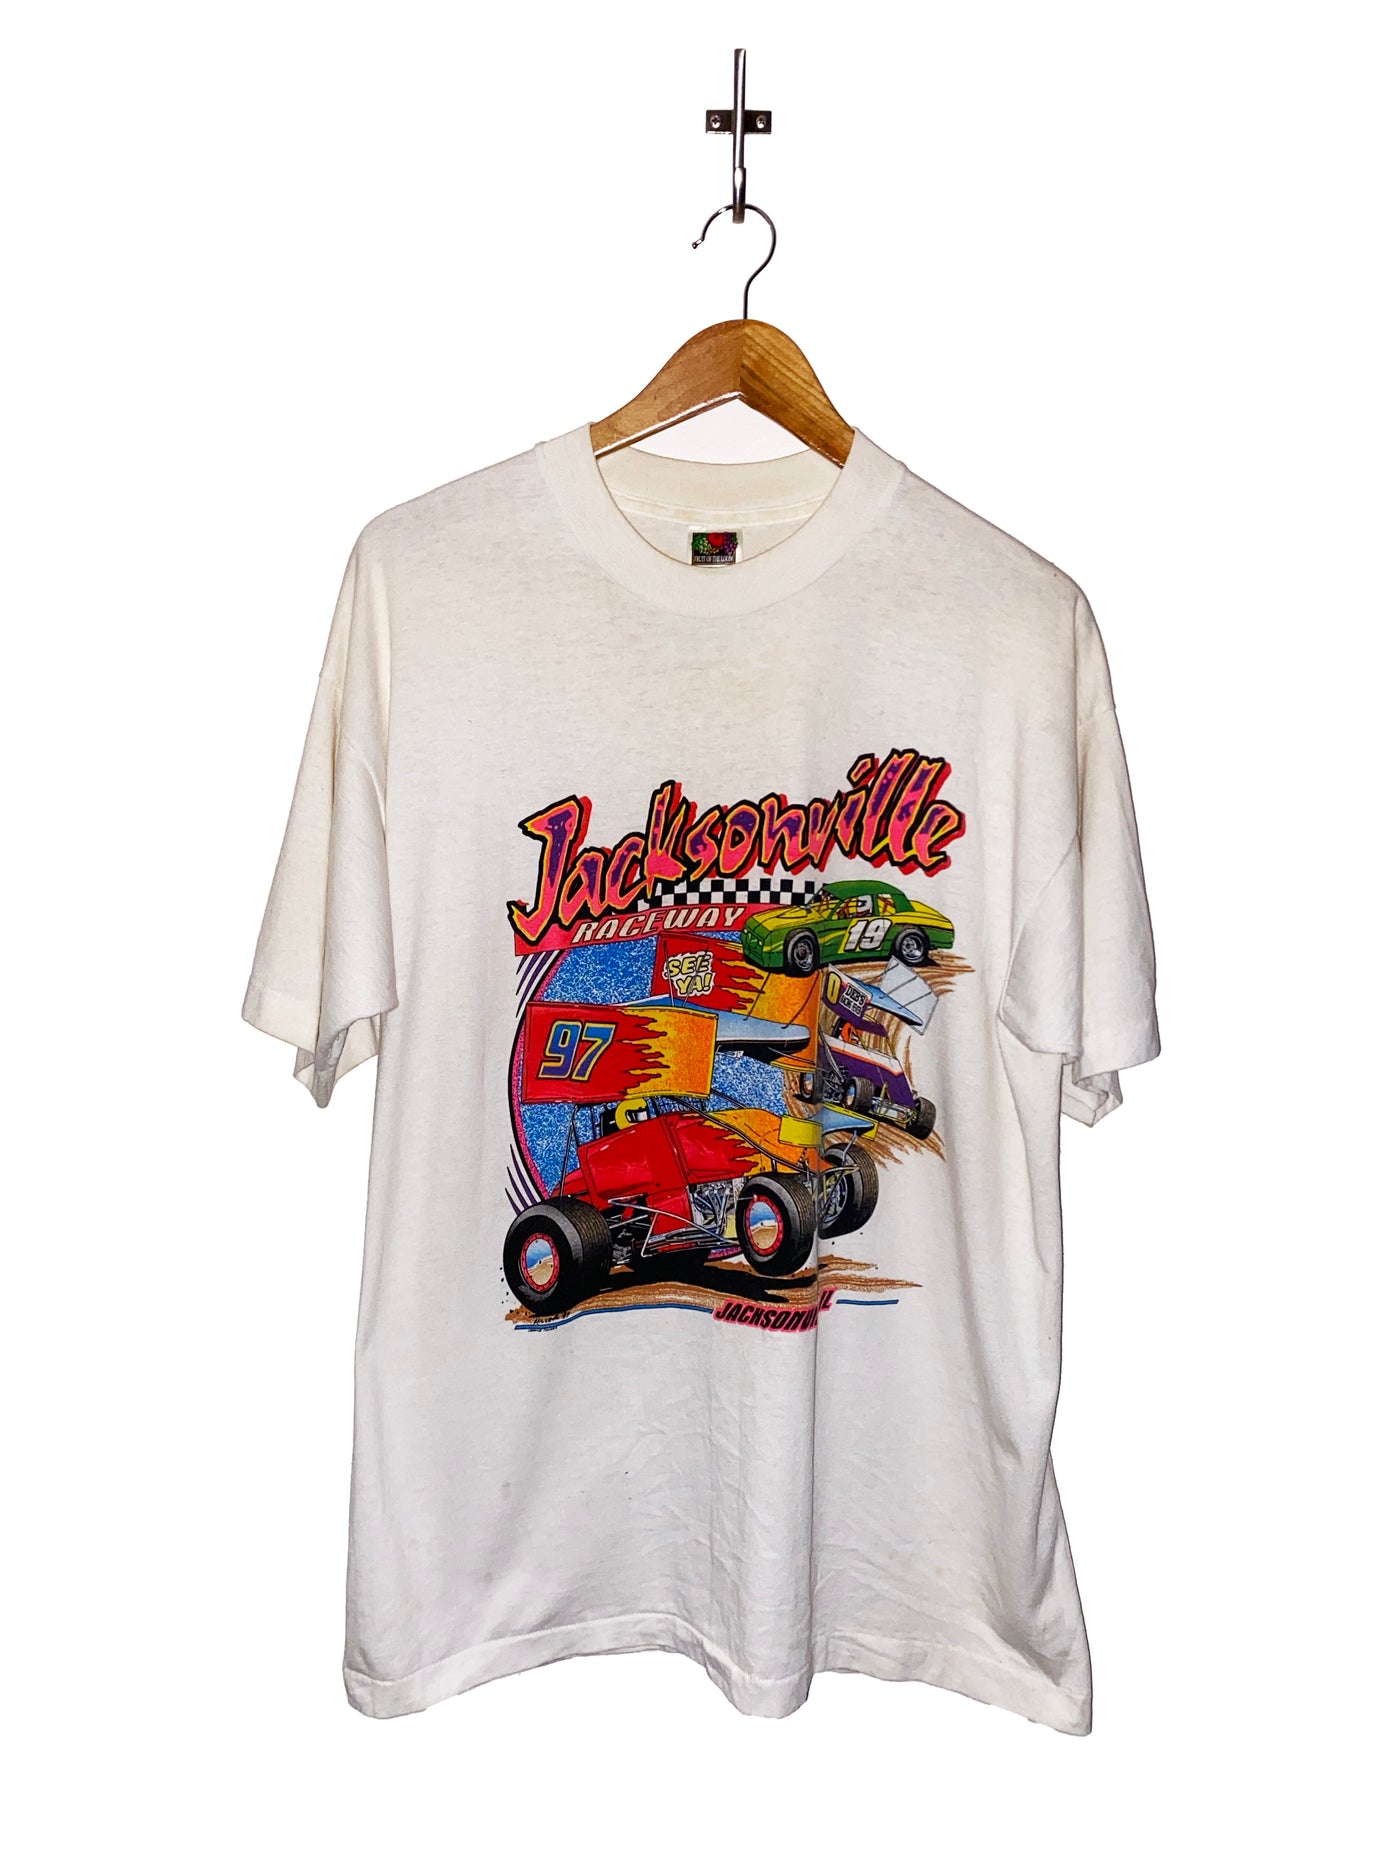 Vintage 1997 Jacksonville Raceway T-Shirt